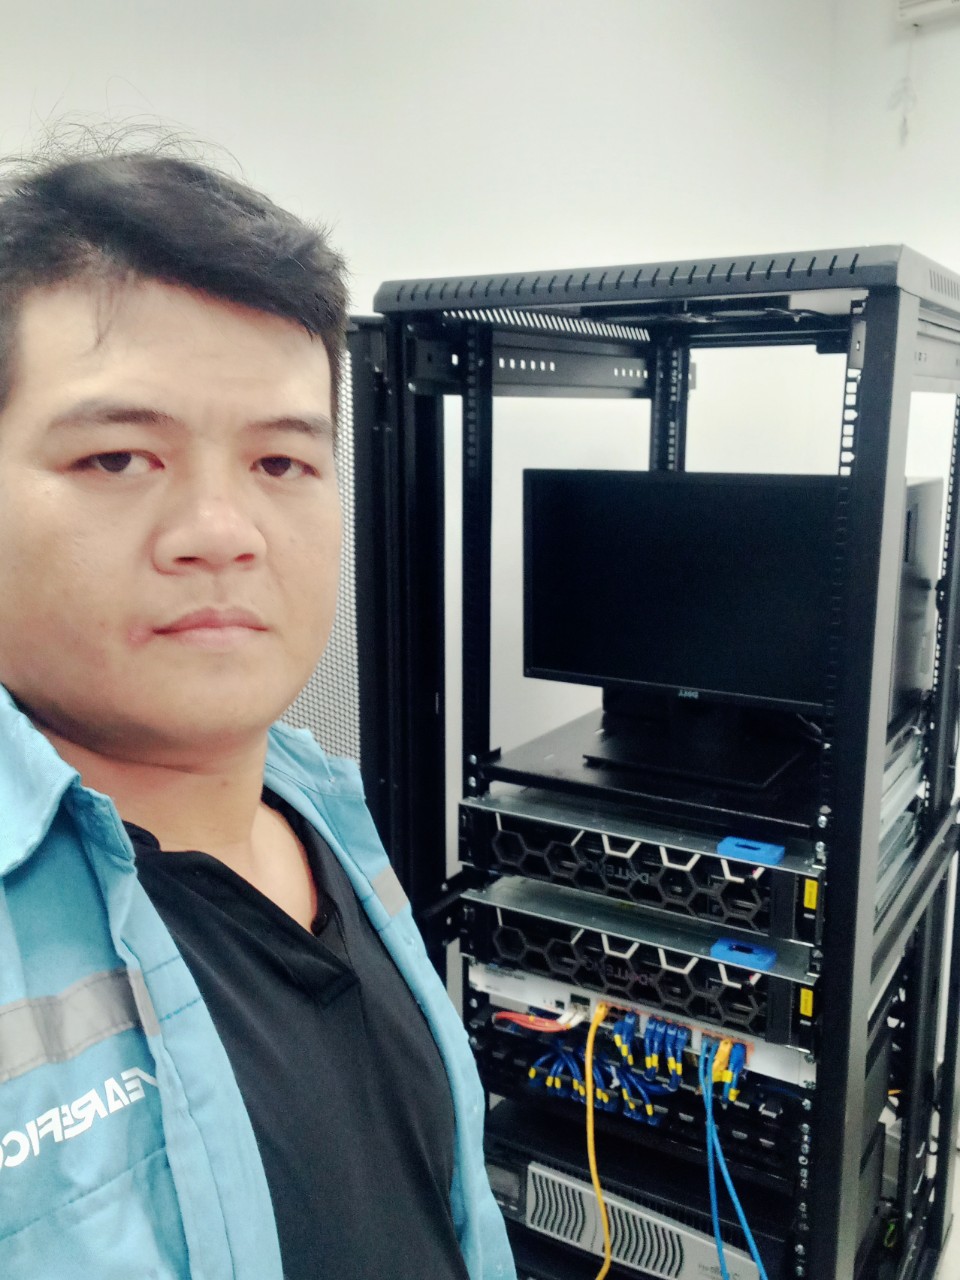 Hoàn thiện phòng Sever và hệ thống Wifi tại Vinamilk Quy Nhơn